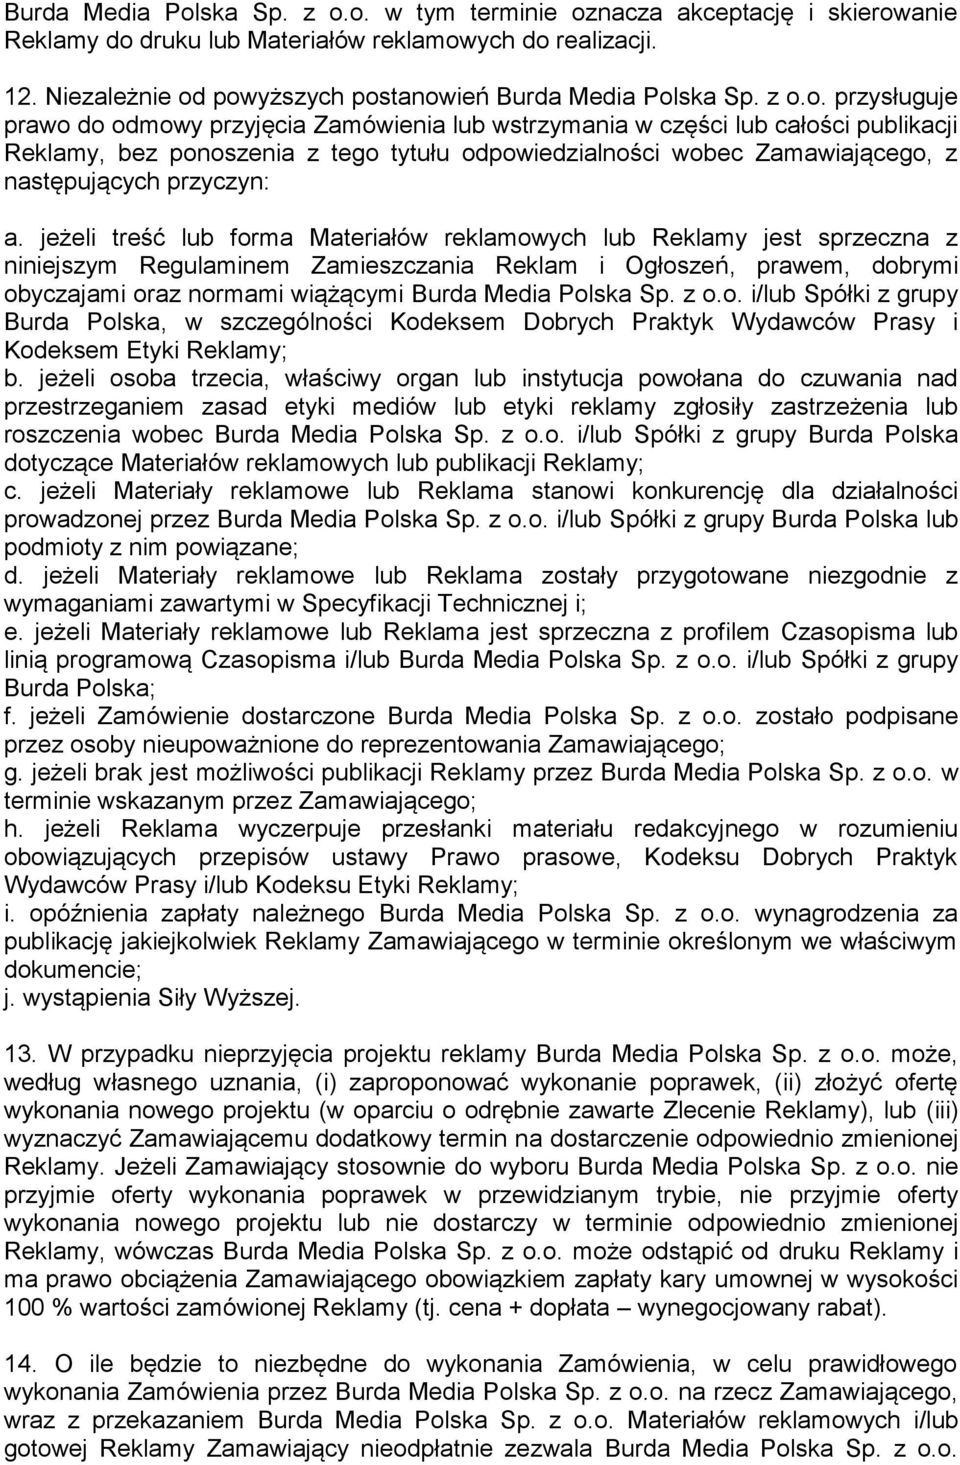 powyższych postanowień Burda Media Polska Sp. z o.o. przysługuje prawo do odmowy przyjęcia Zamówienia lub wstrzymania w części lub całości publikacji Reklamy, bez ponoszenia z tego tytułu